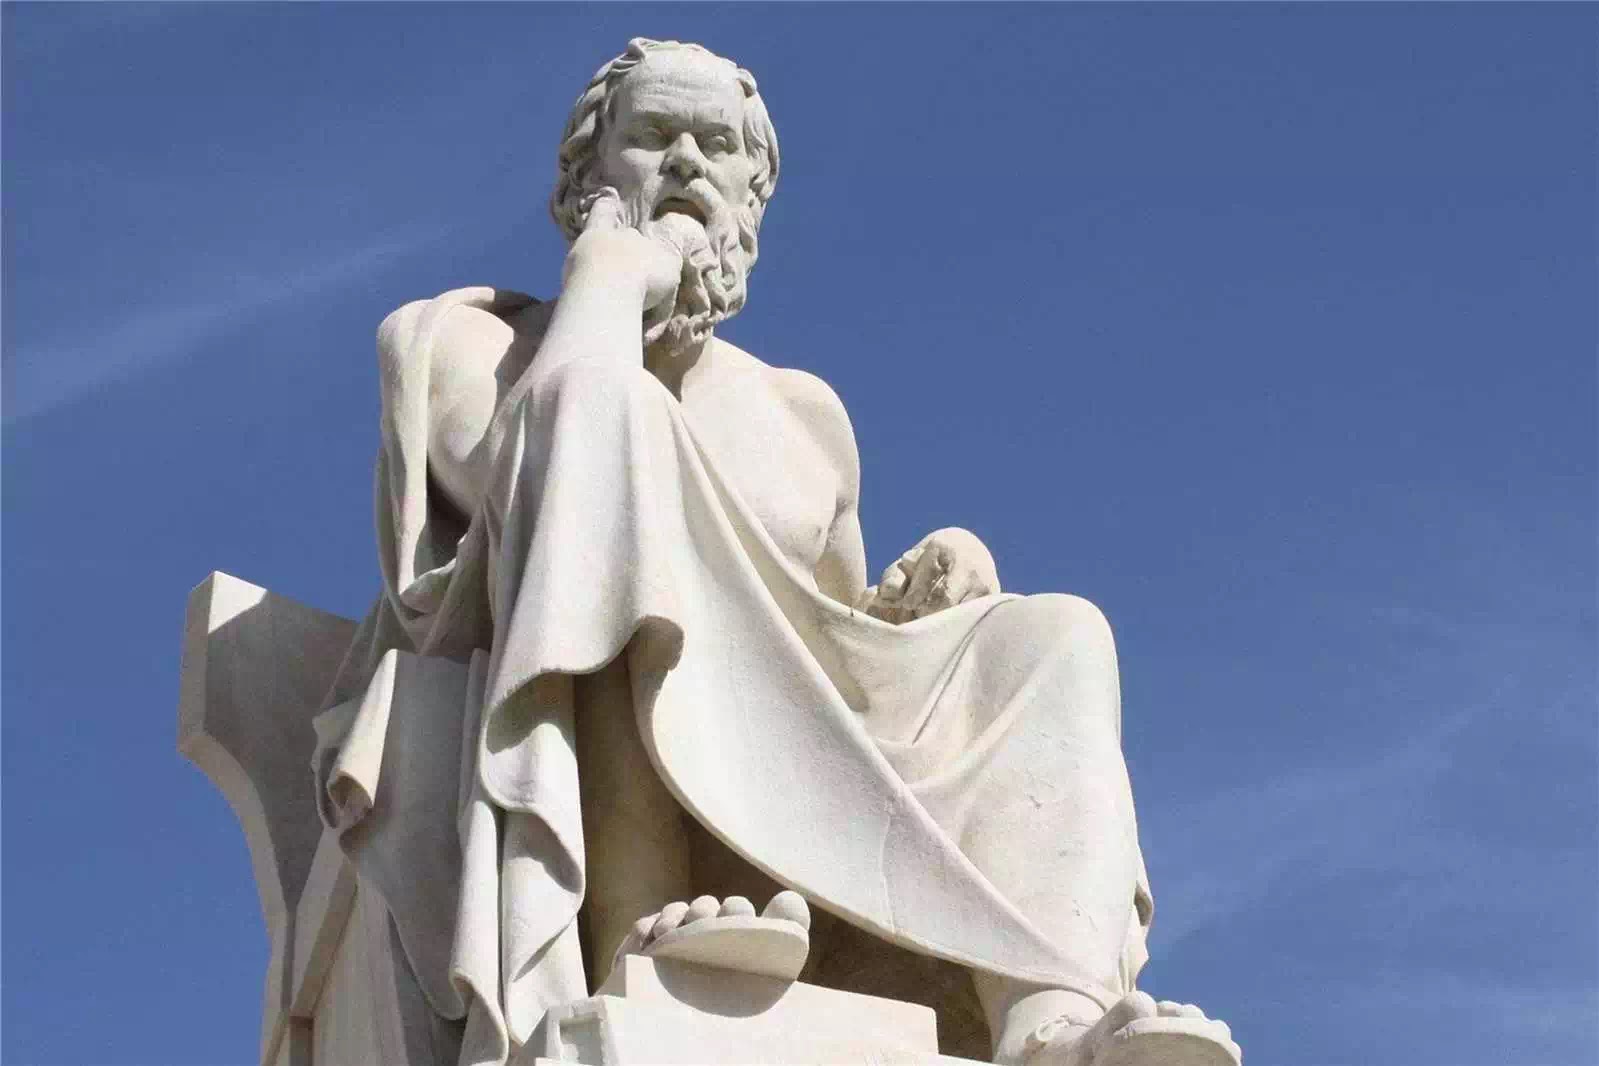 “Đức hạnh tỷ lệ thuận với hiểu biết” (Socrates)!